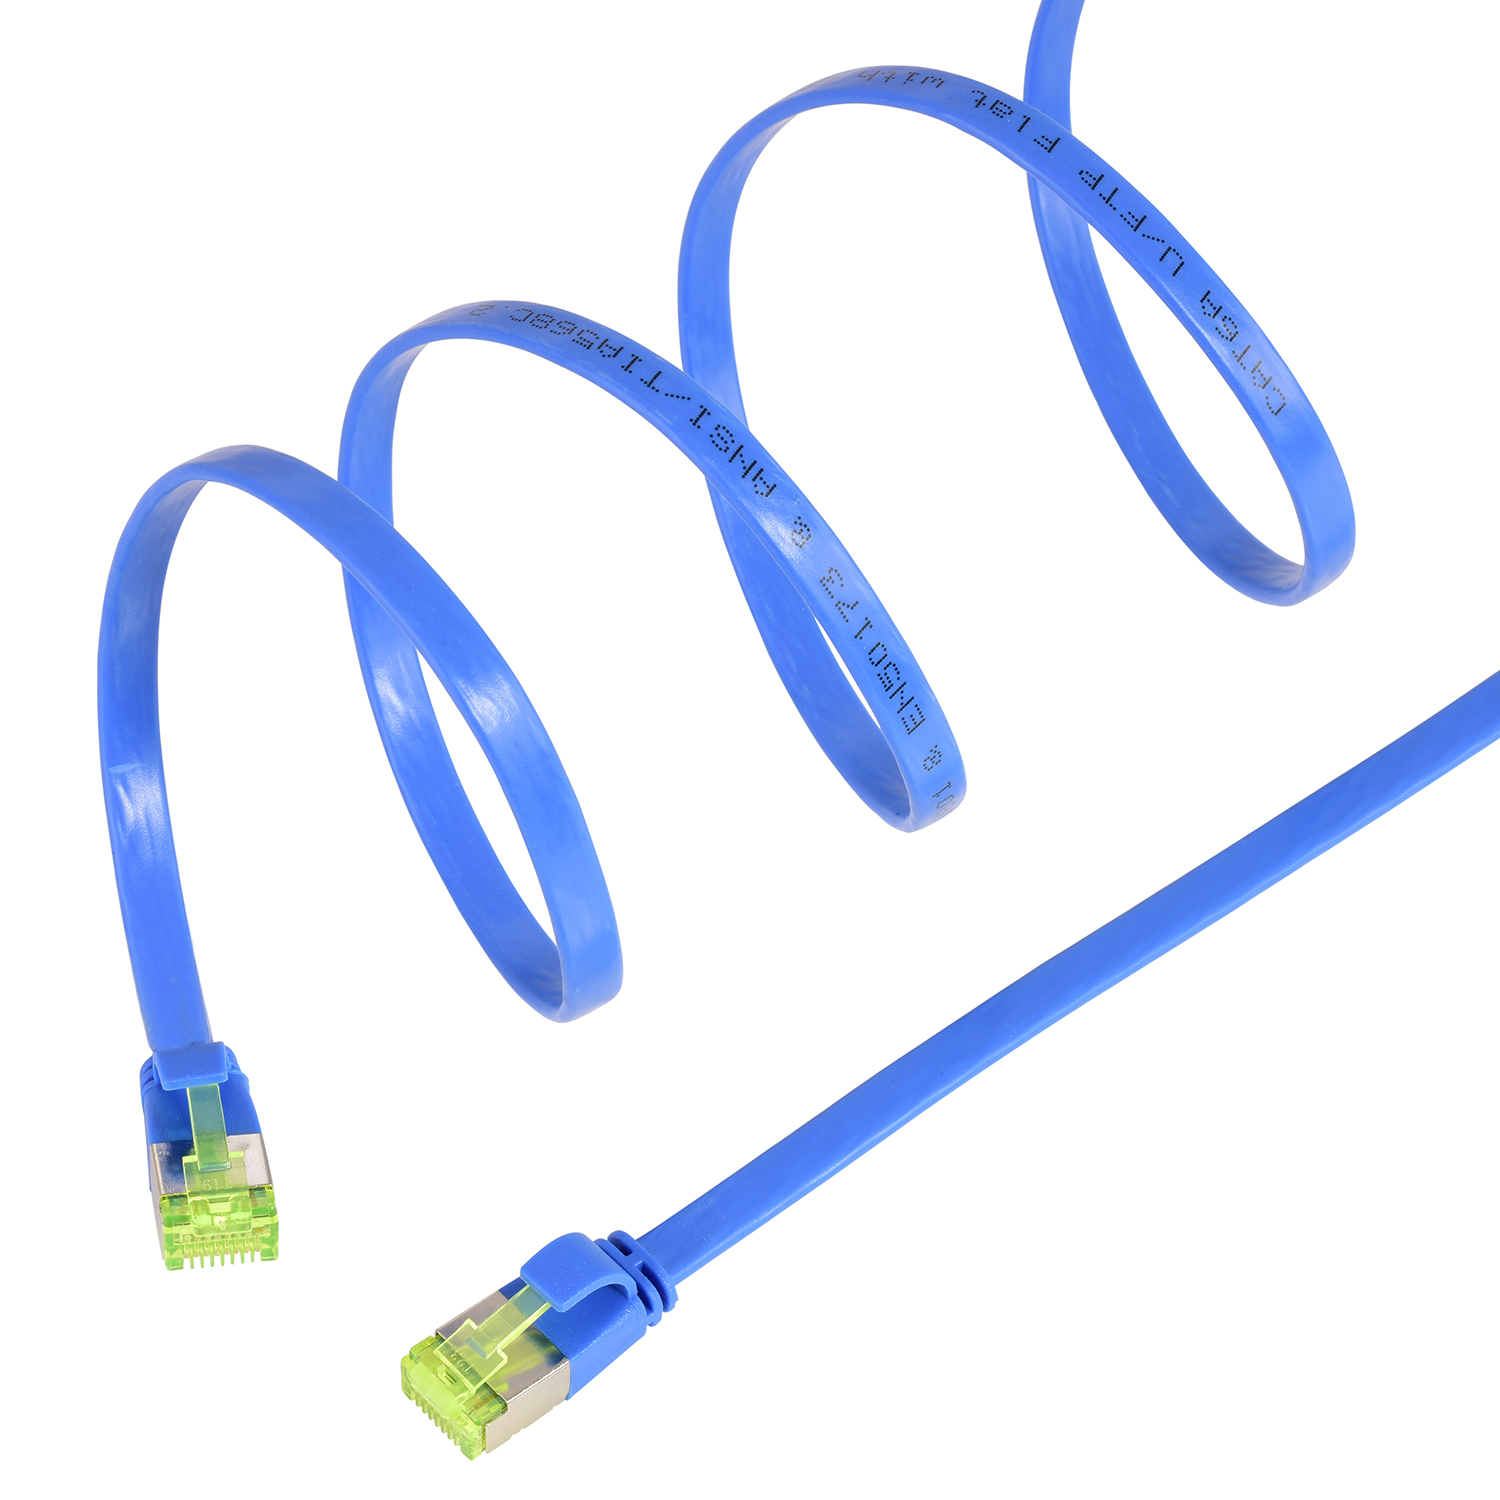 TPFNET 5er Pack 2m U/FTP Netzwerkkabel, m Flachkabel 2 / Patchkabel GBit, blau, 10